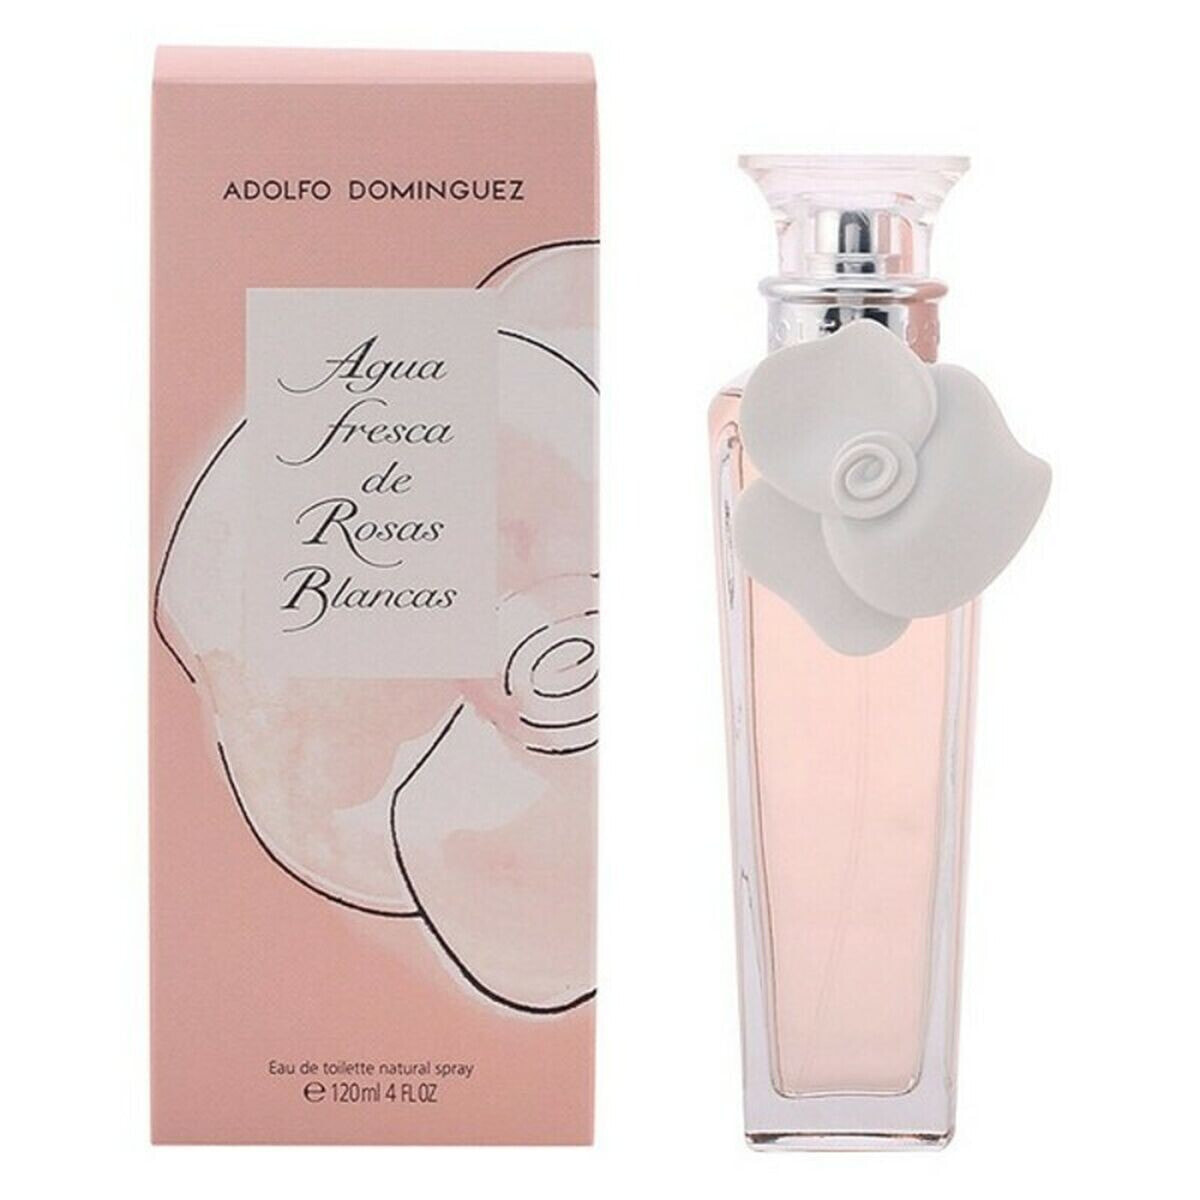 Women's Perfume Adolfo Dominguez EDT 120 ml